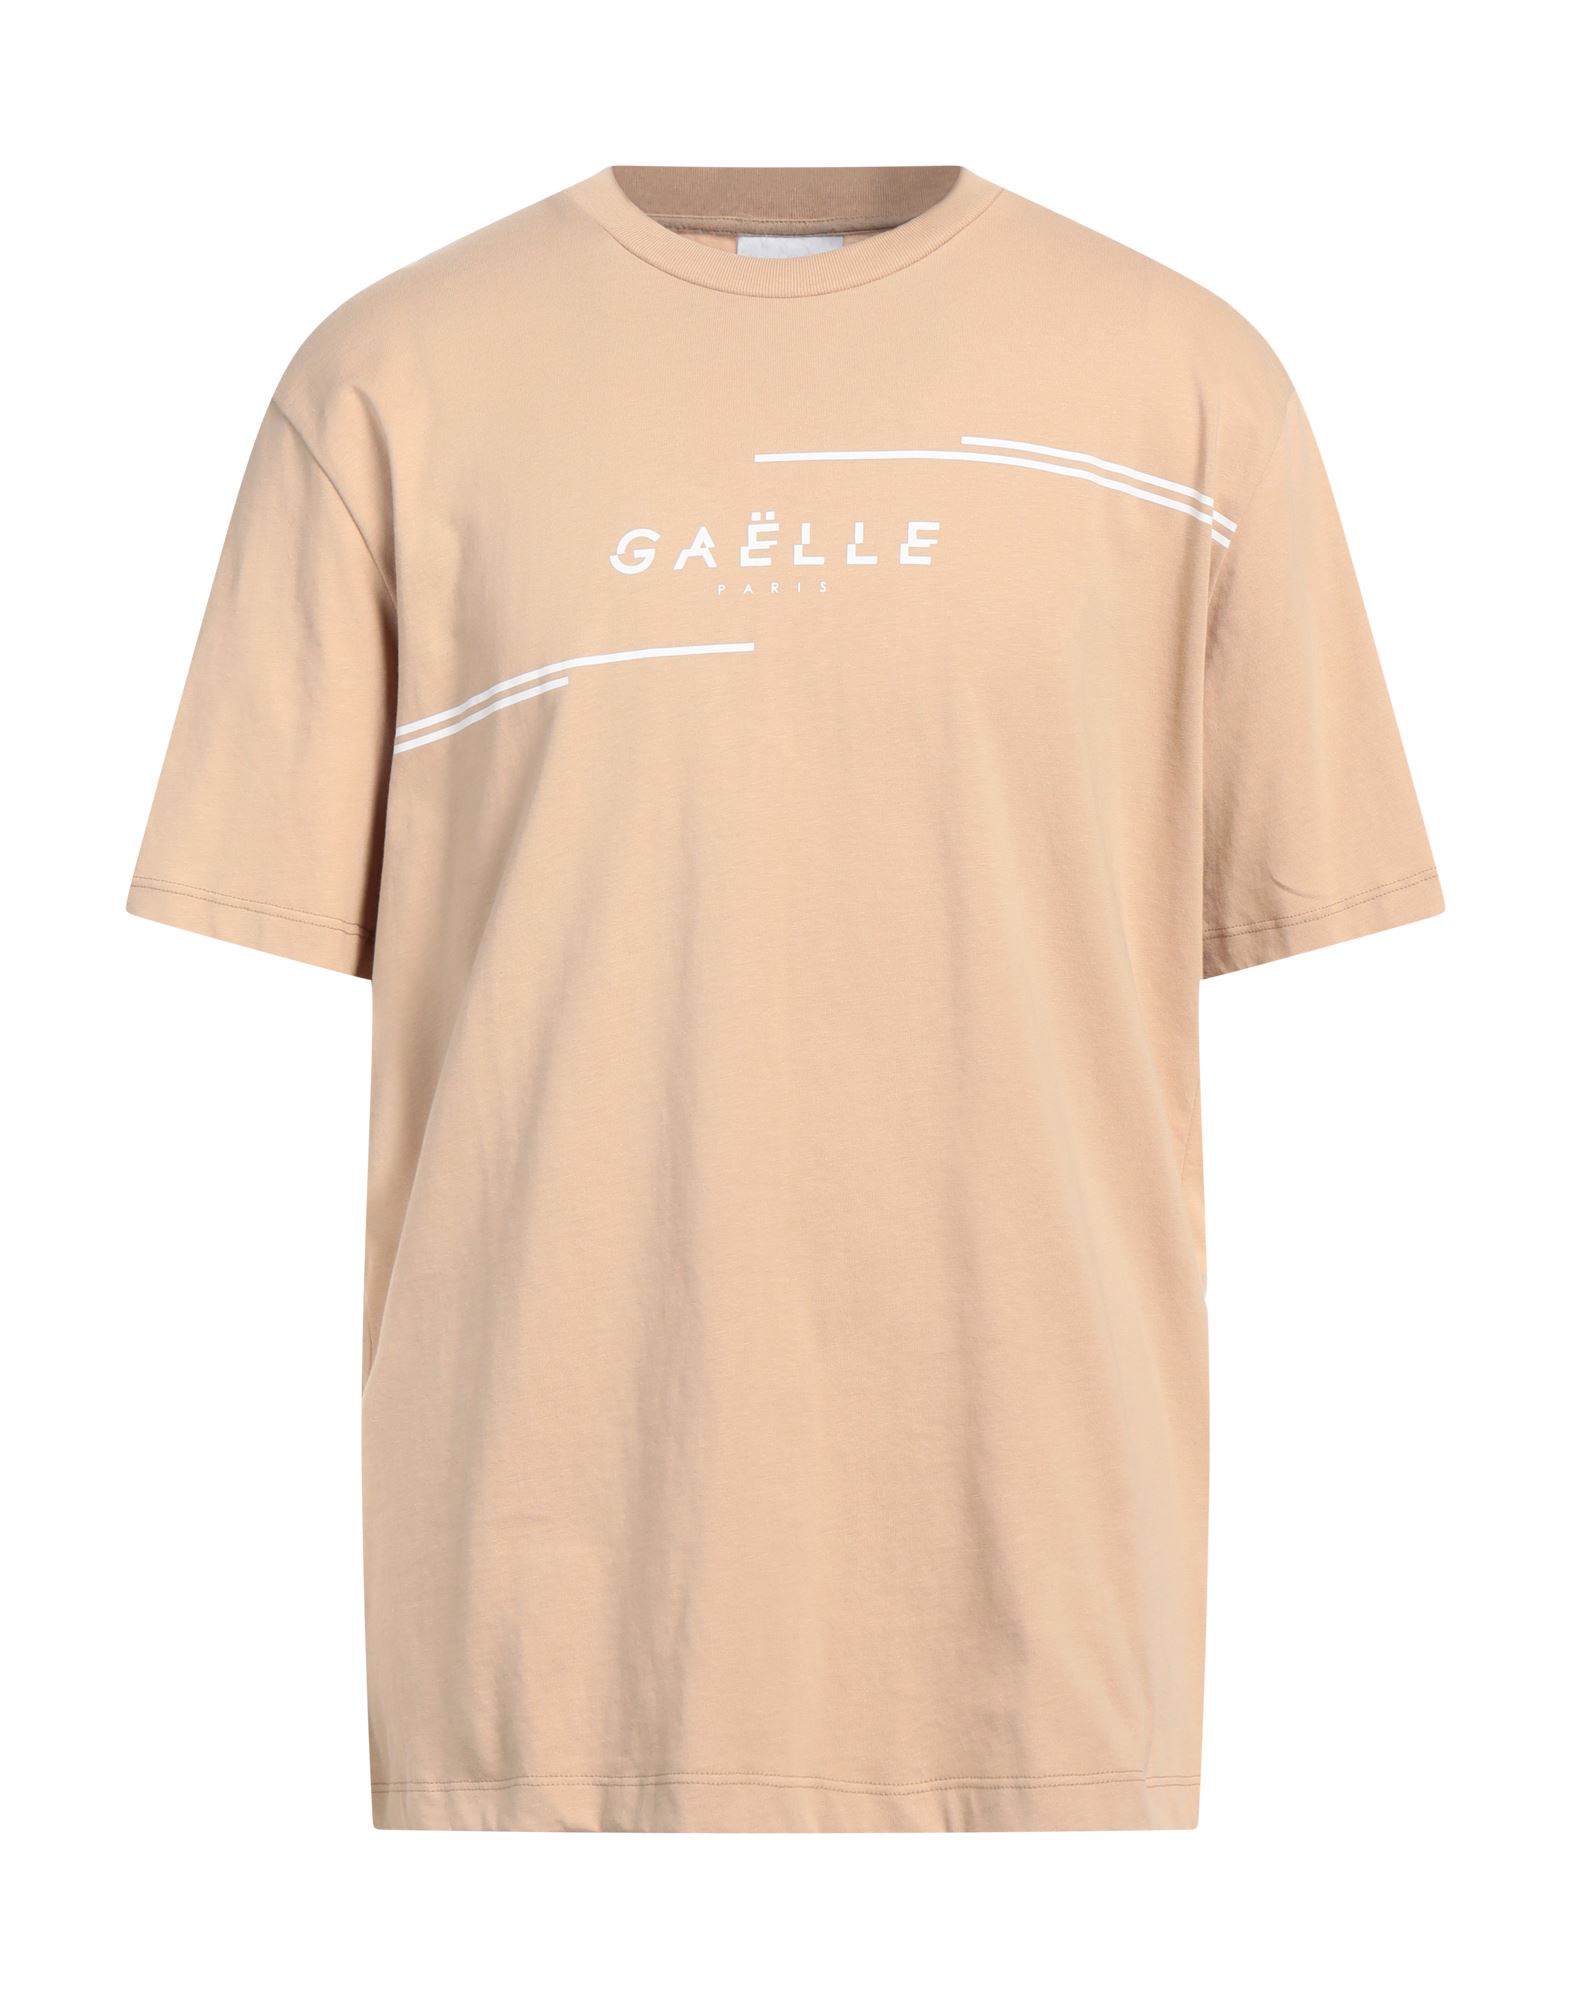 GAëLLE Paris T-shirts Herren Sand von GAëLLE Paris